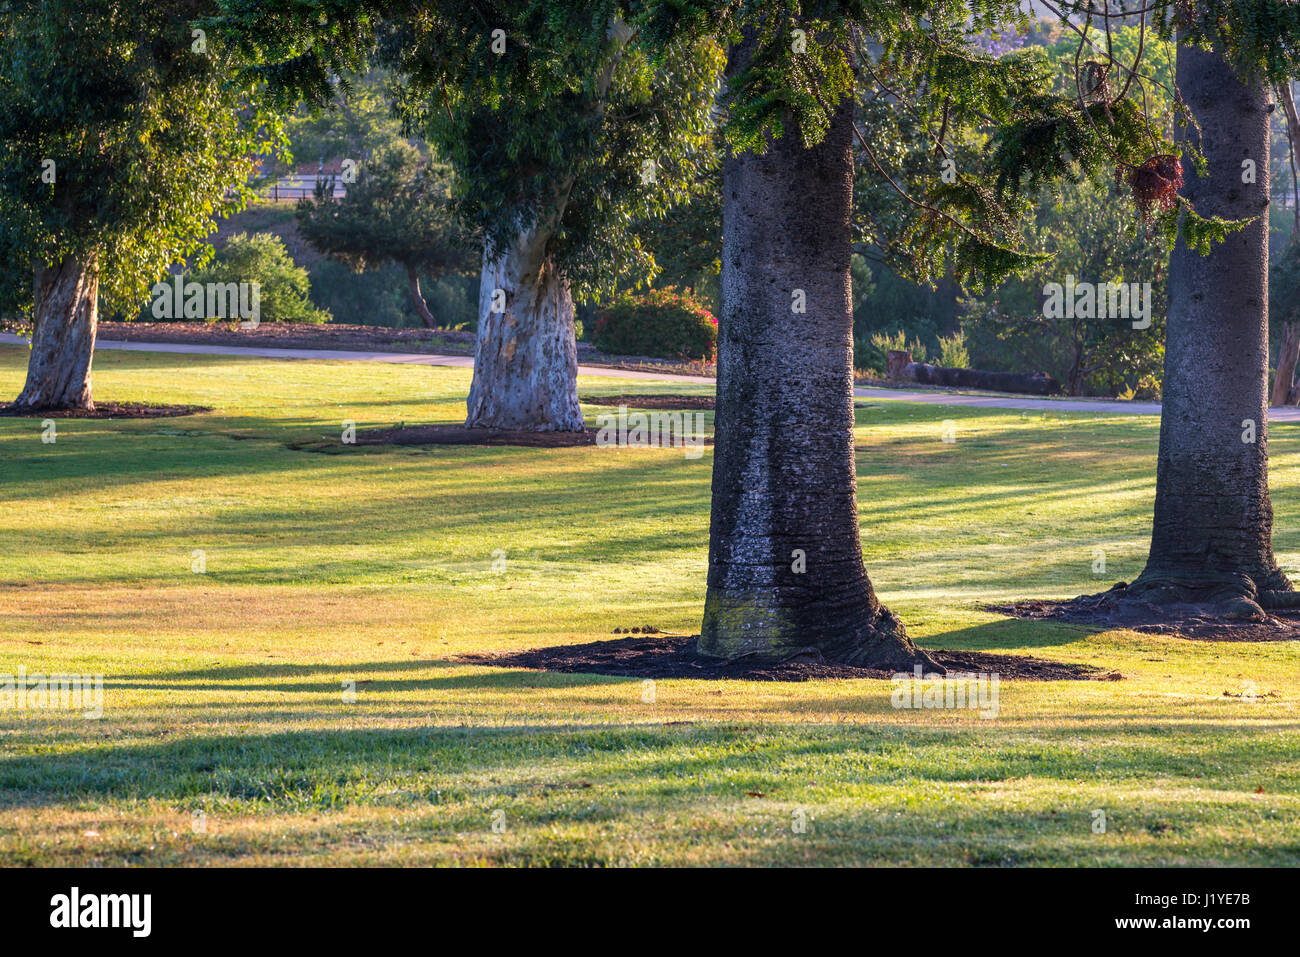 Sonnenaufgang mit Bäumen in einer Parklandschaft. Balboa Park, San Diego, Kalifornien, USA. Stockfoto